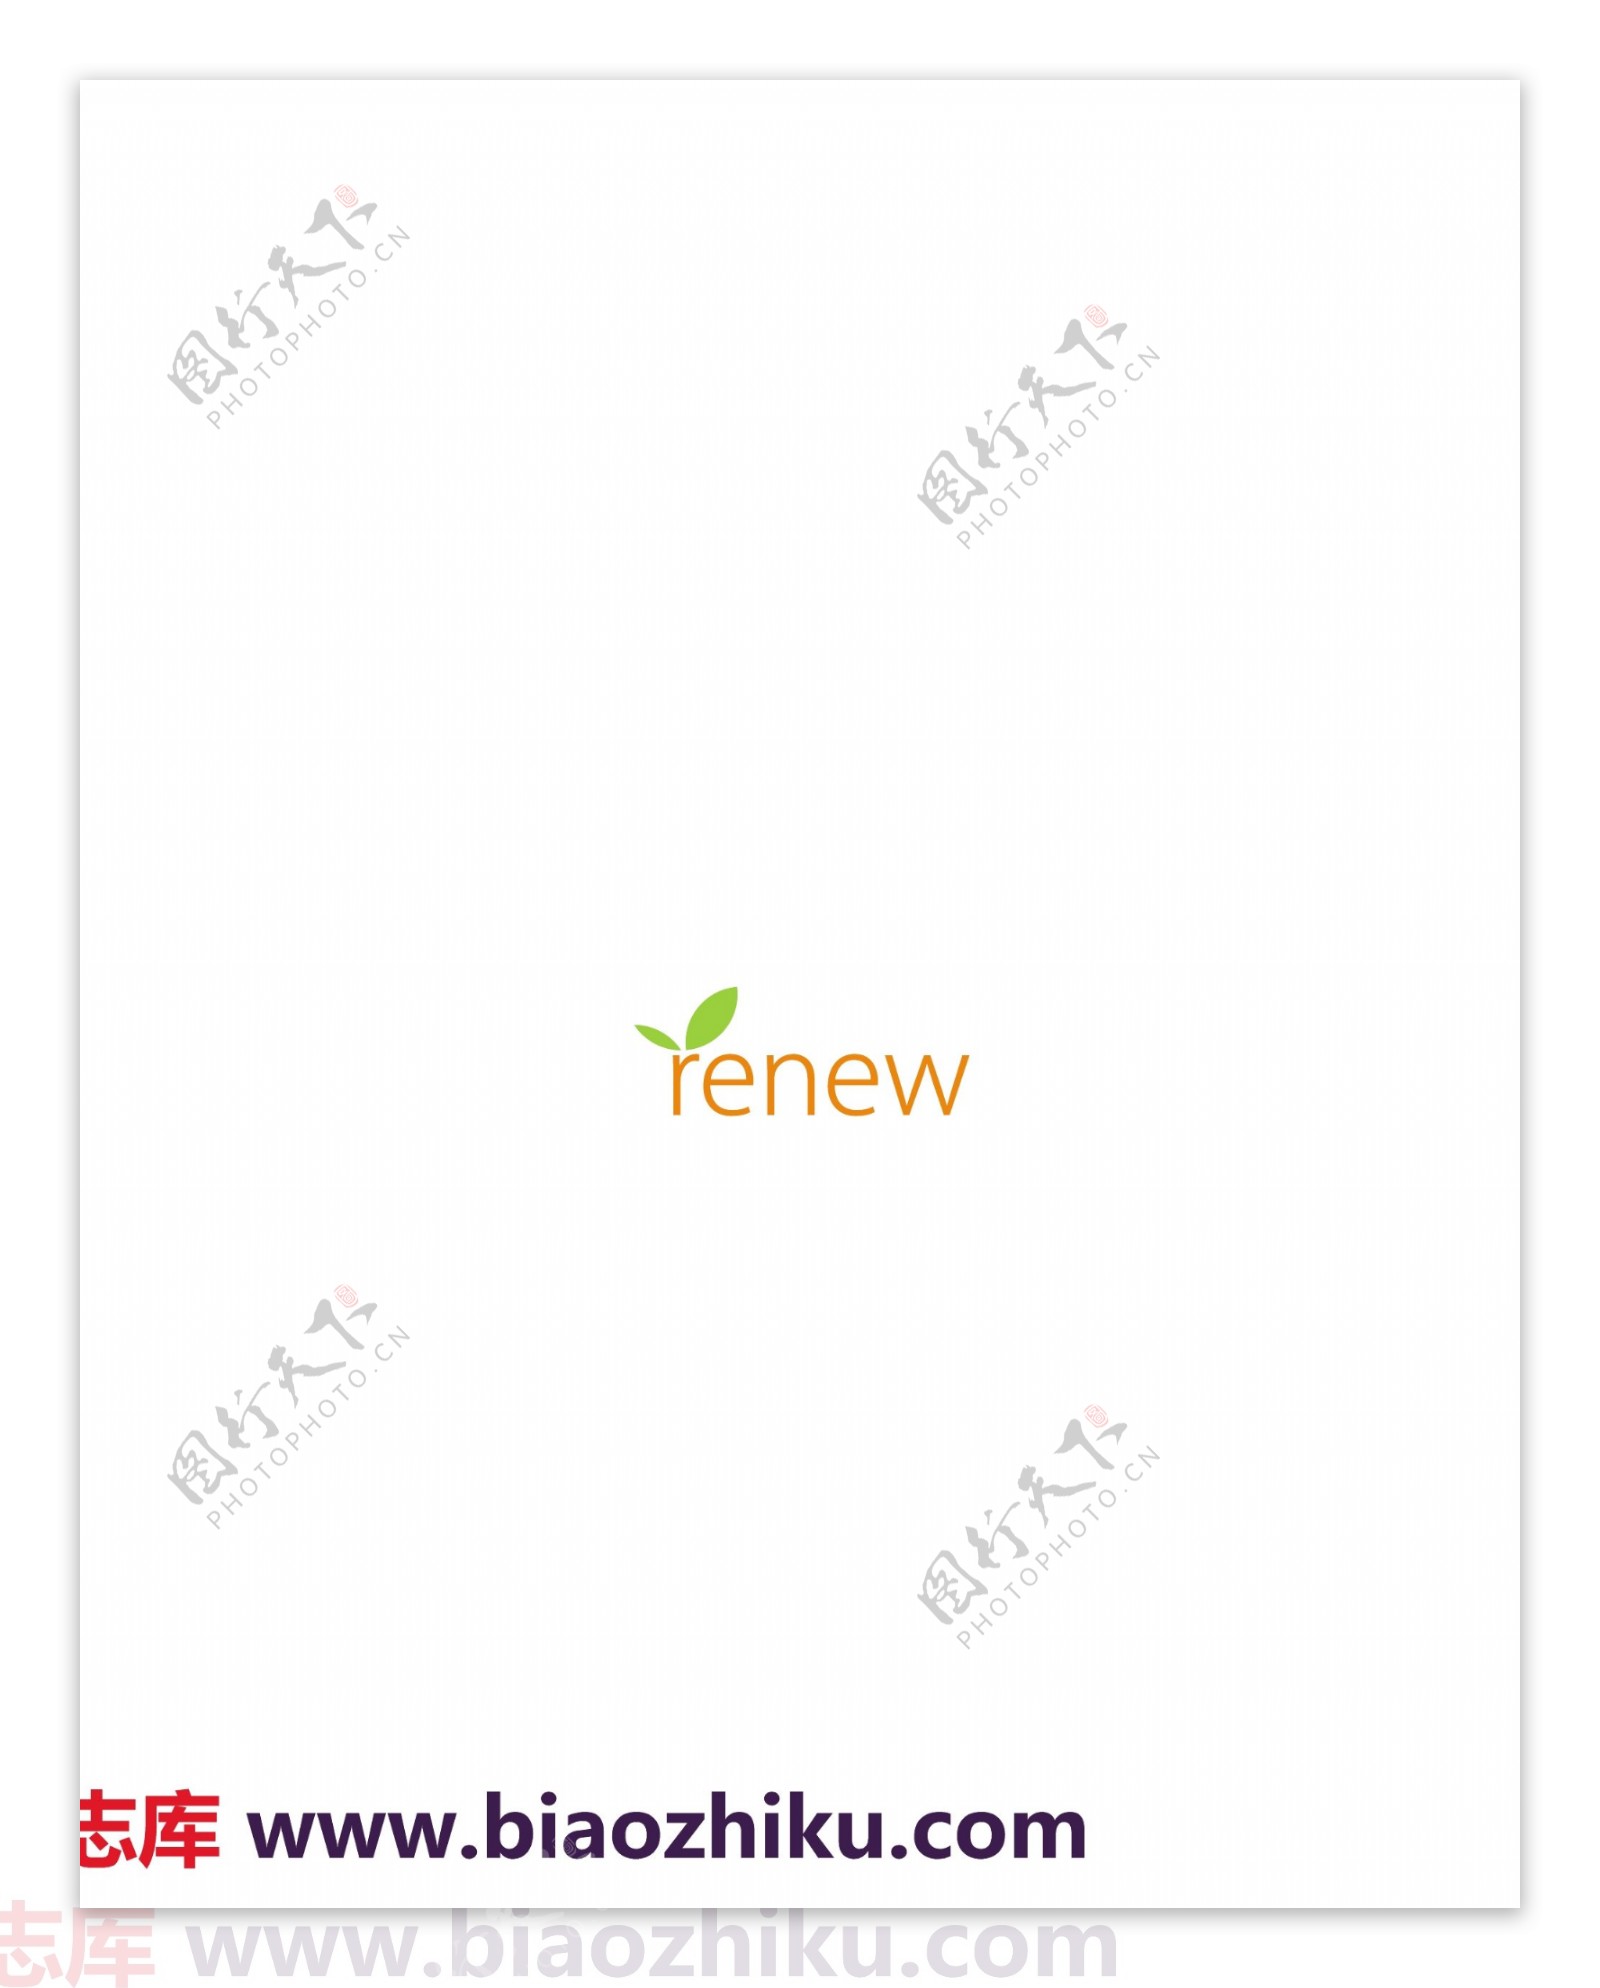 Renewlogo设计欣赏Renew设计公司标志下载标志设计欣赏